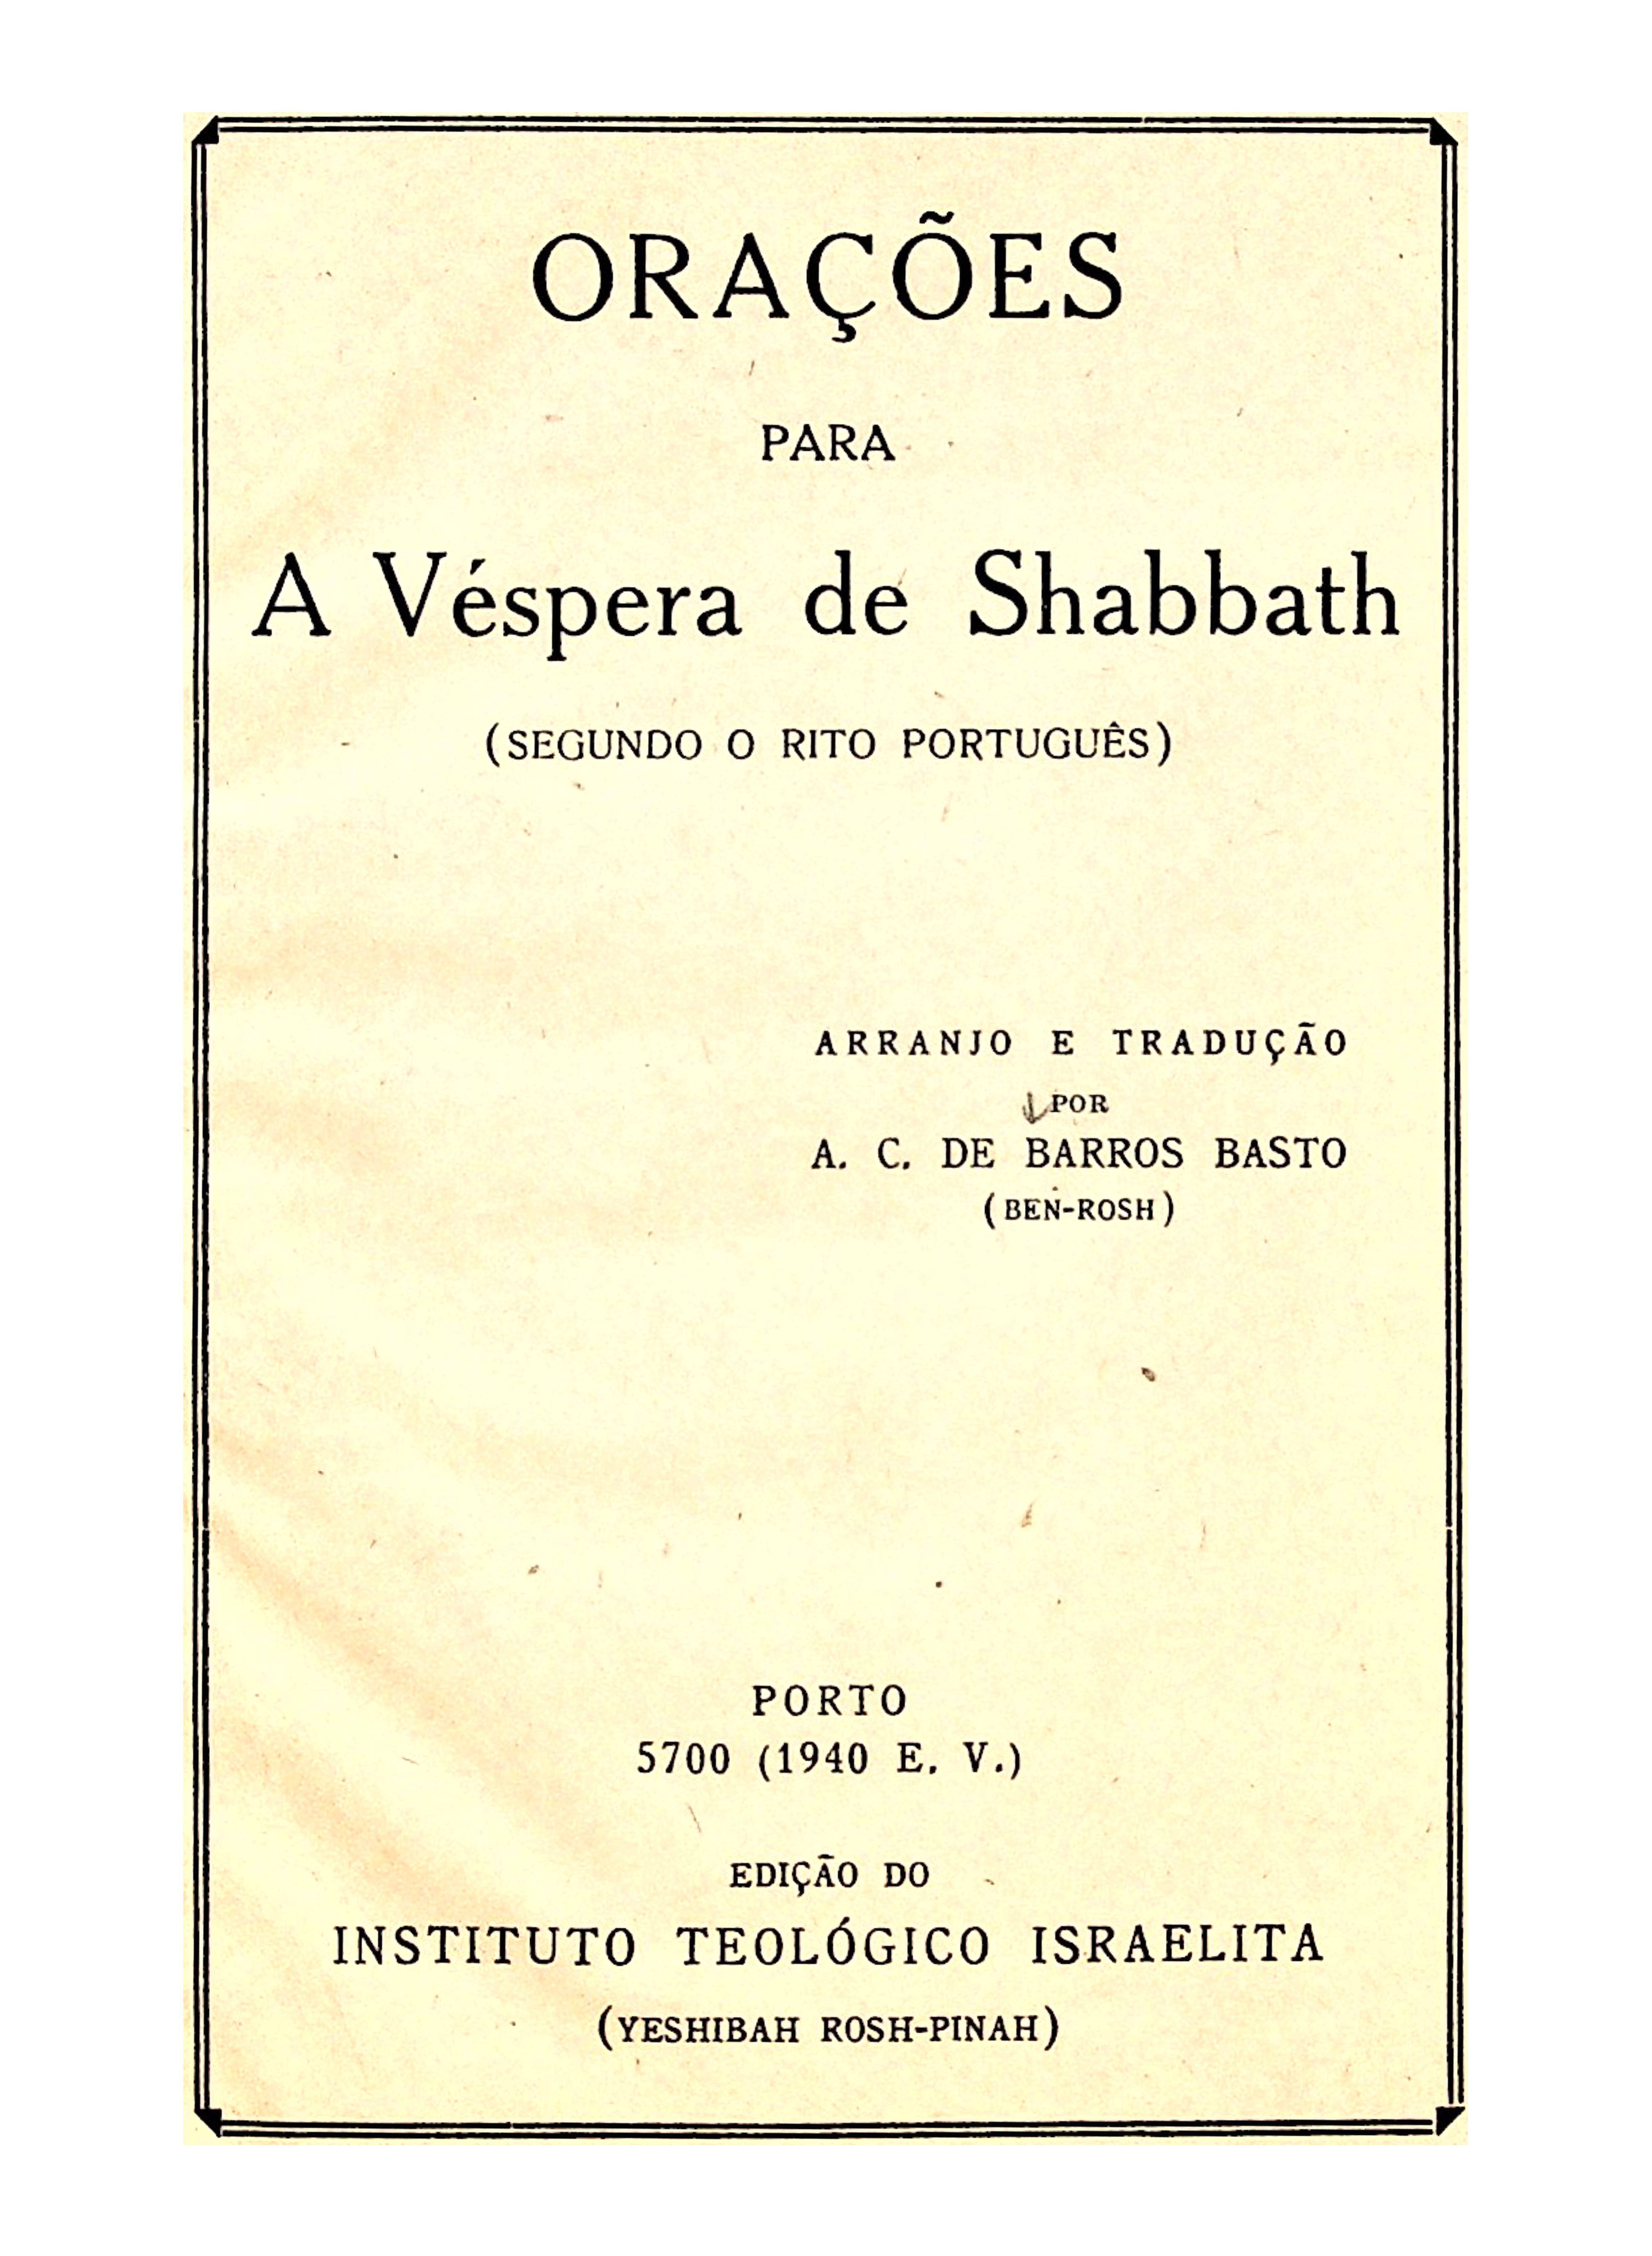 Orações para a Vespera de Shabbath (A.C. de Barros Basto 1940) – title